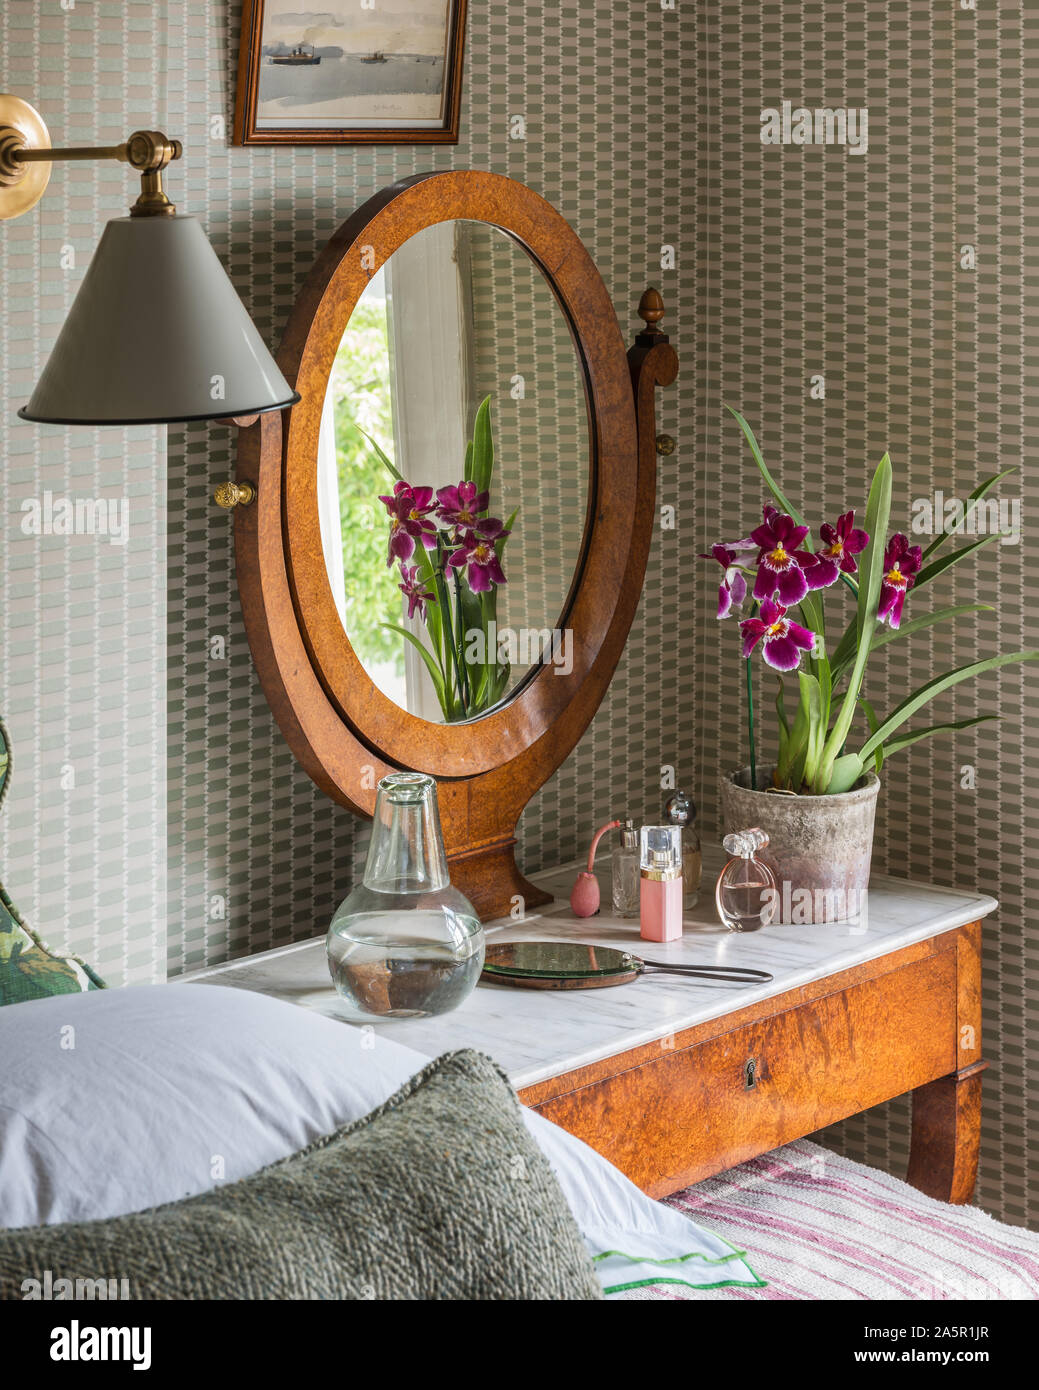 Orchidee im Spiegel der Spiegel auf der Frisierkommode Stockfoto